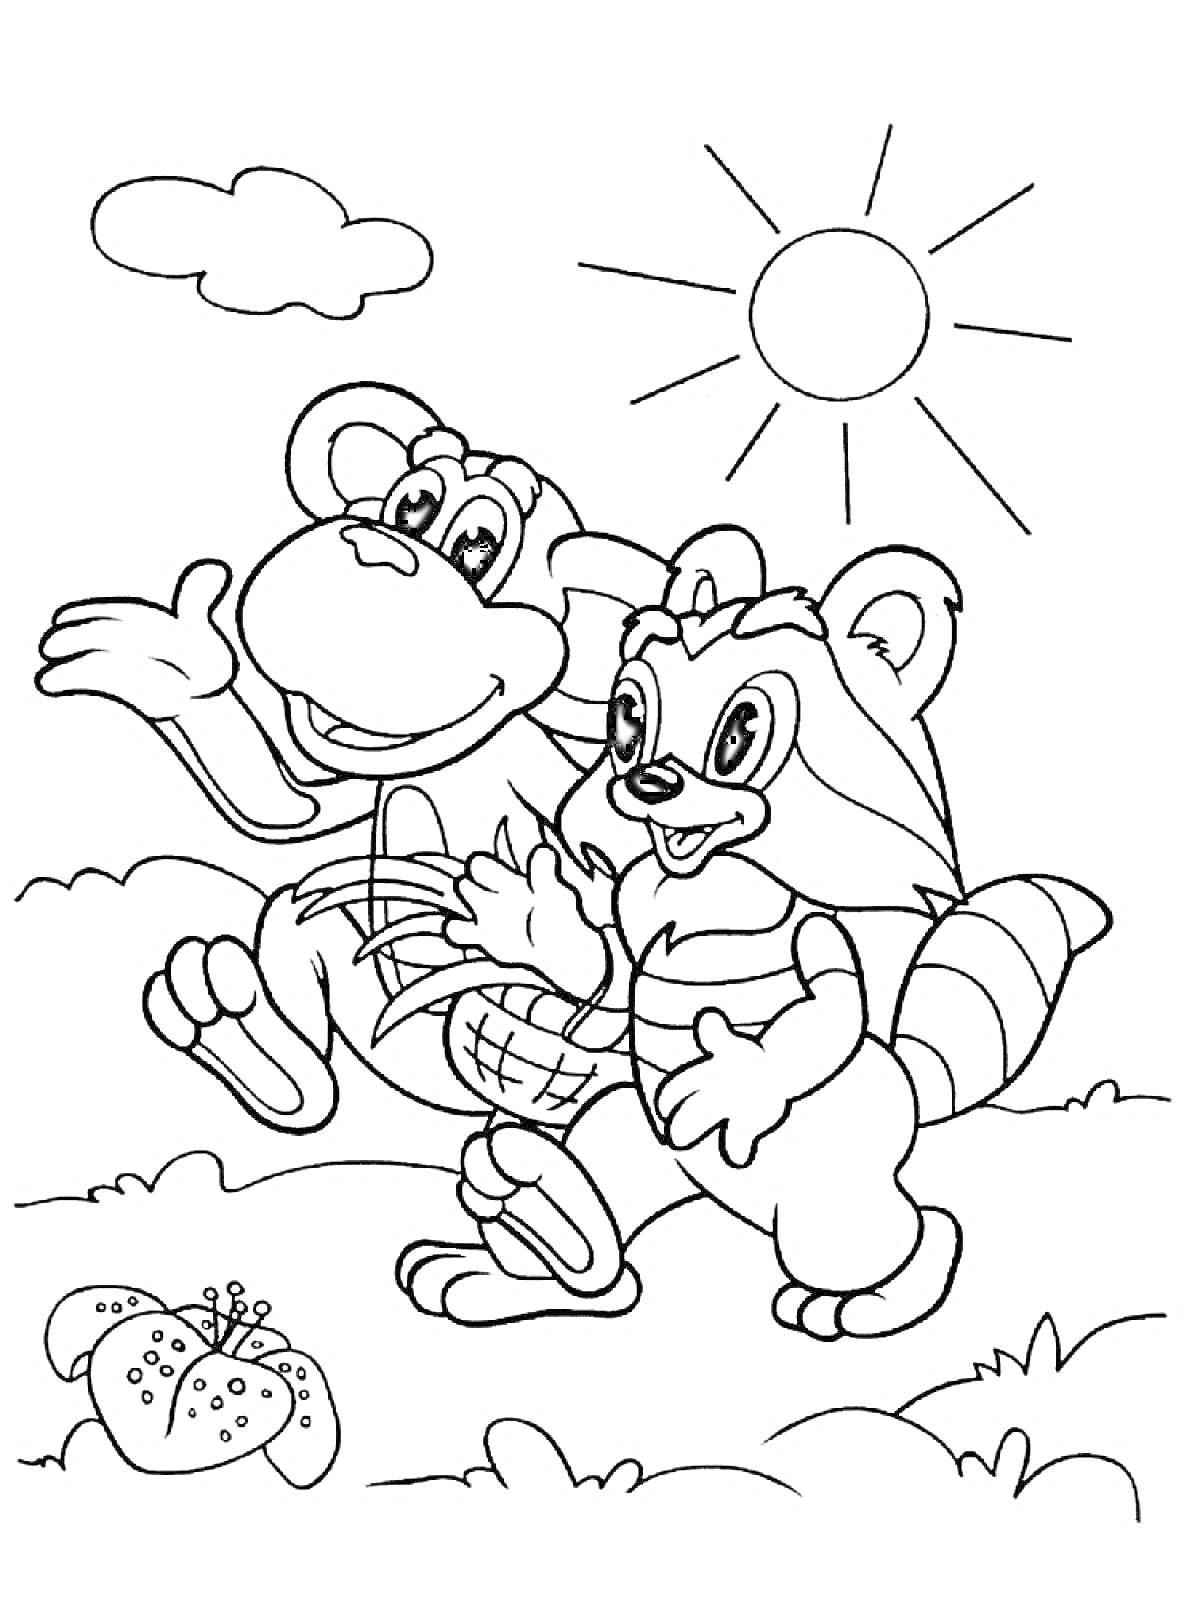 Раскраска Енот и обезьяна на прогулке под солнцем в поле с цветами